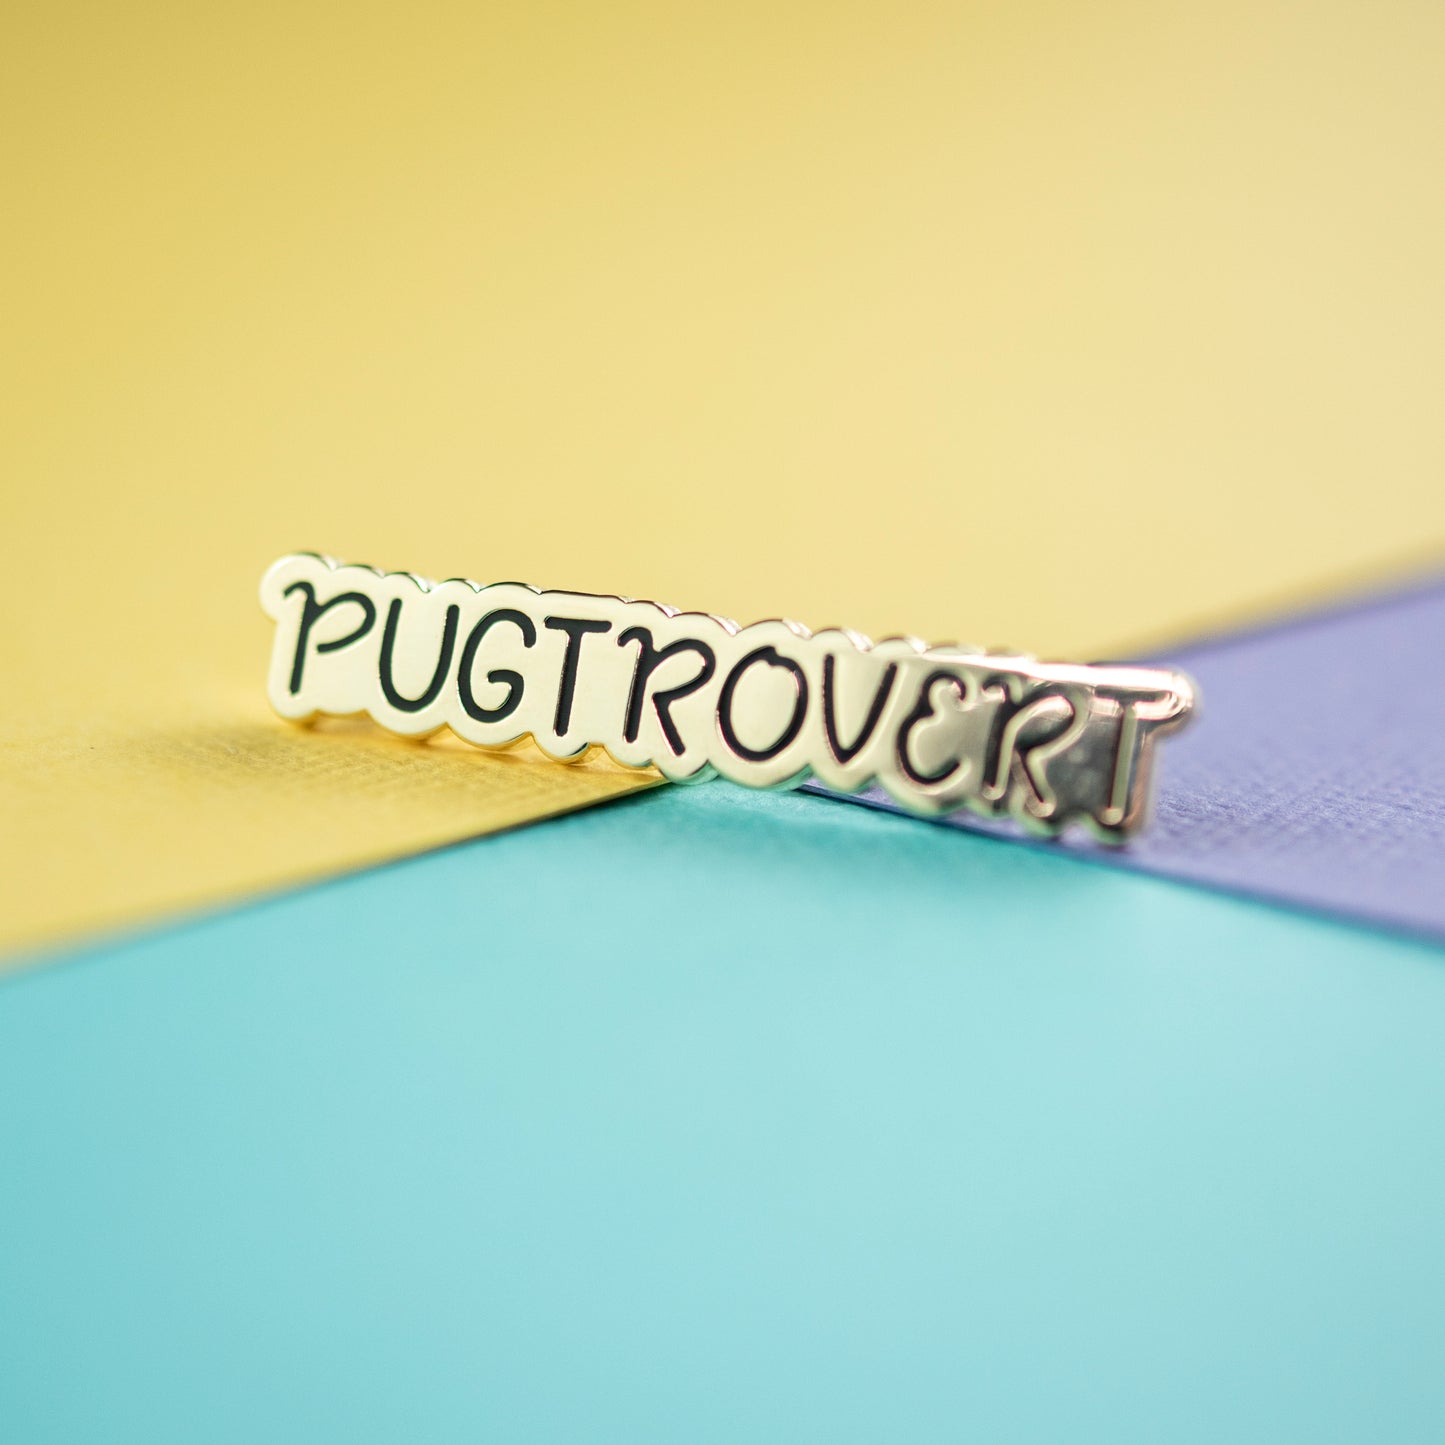 Pugtrovert Enamel Pin